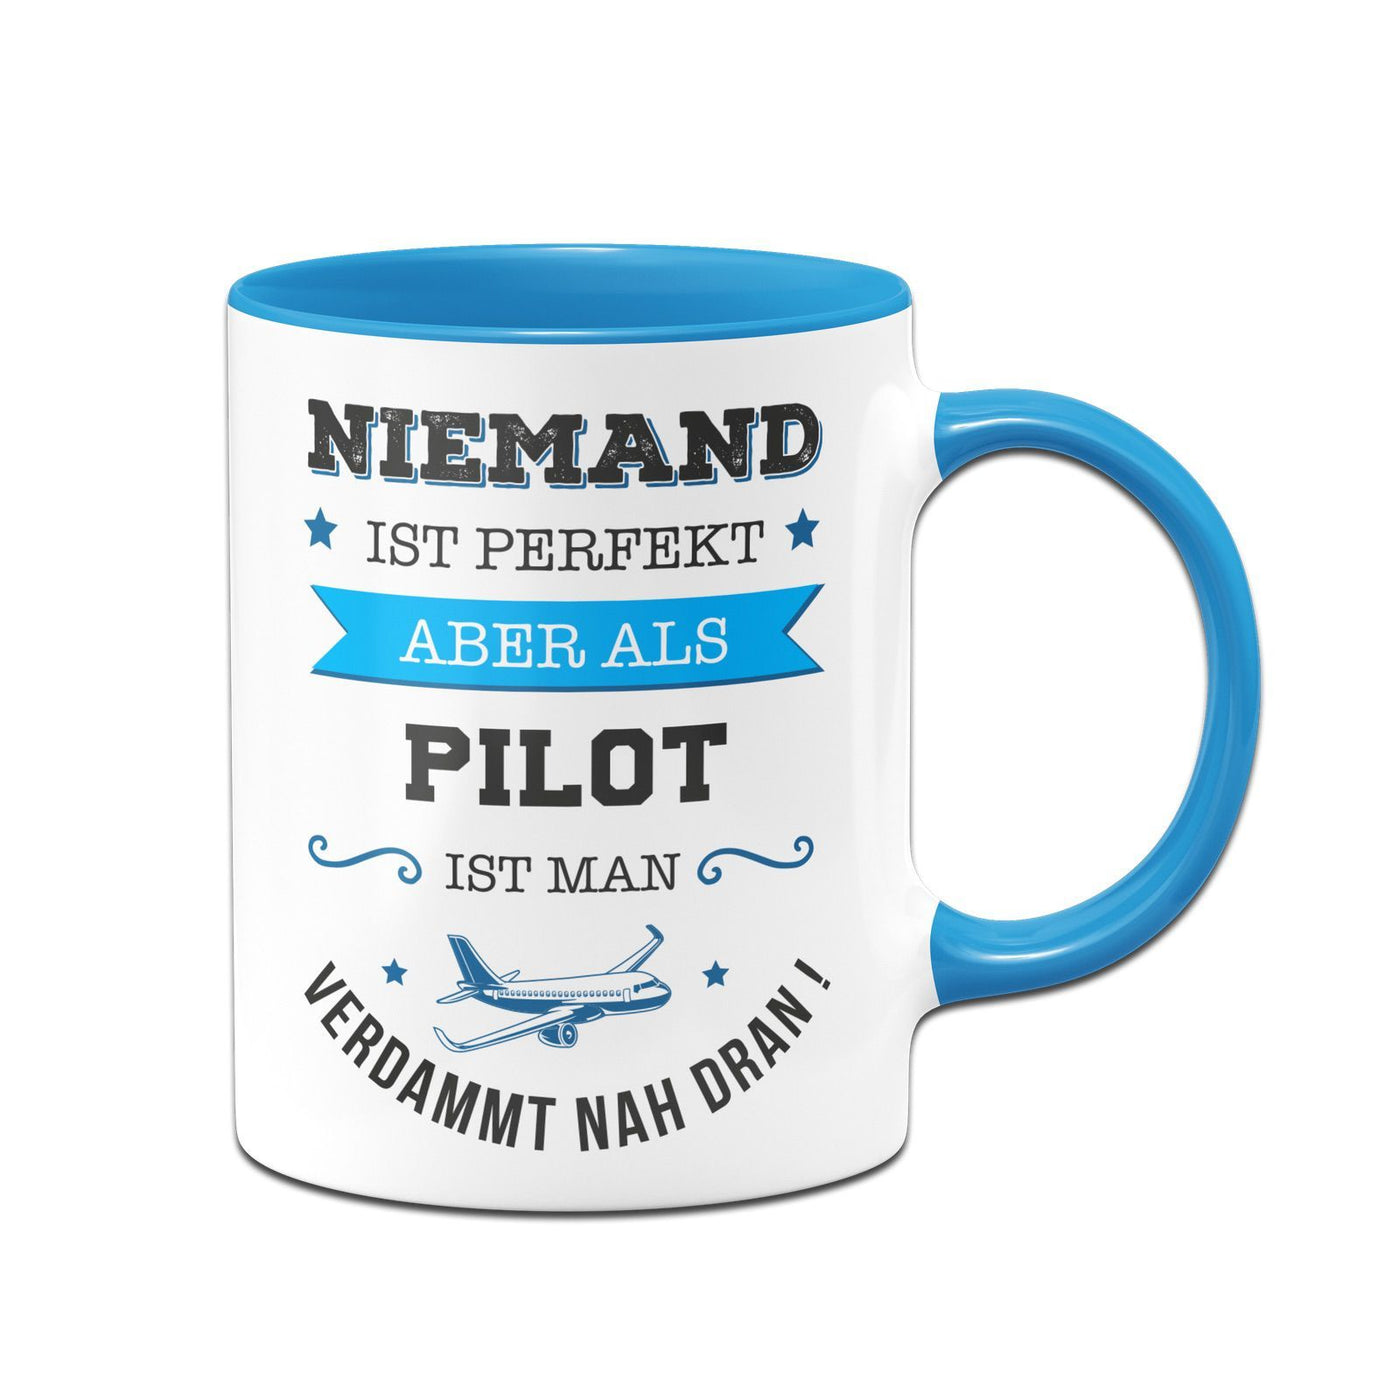 Bild: Tasse - Niemand ist perfekt aber als Pilot ist man verdammt nah dran! Geschenkidee